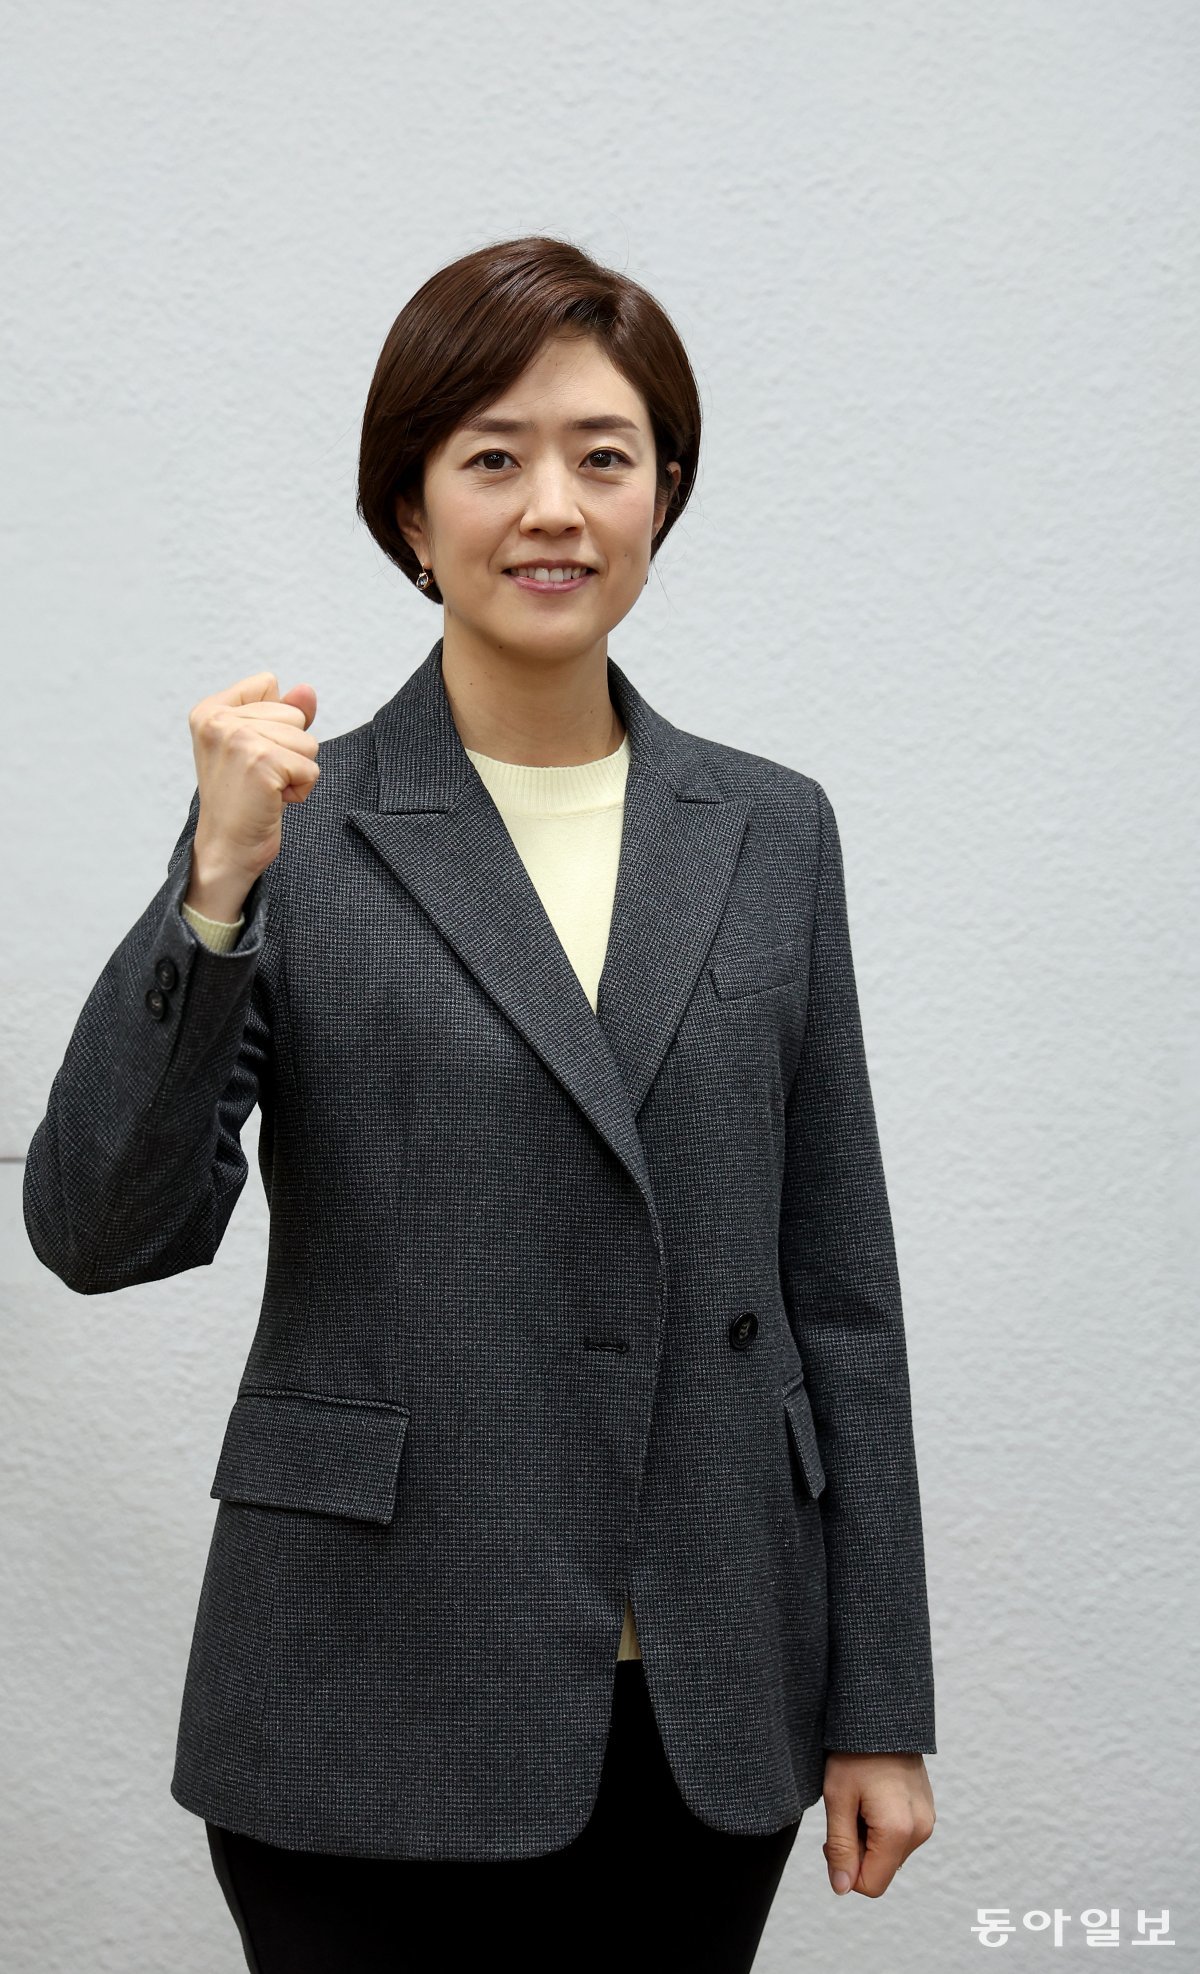 선거사무실에서 만난 더불어민주당 고민정 의원. 송은석 기자 silverstone@donga.com